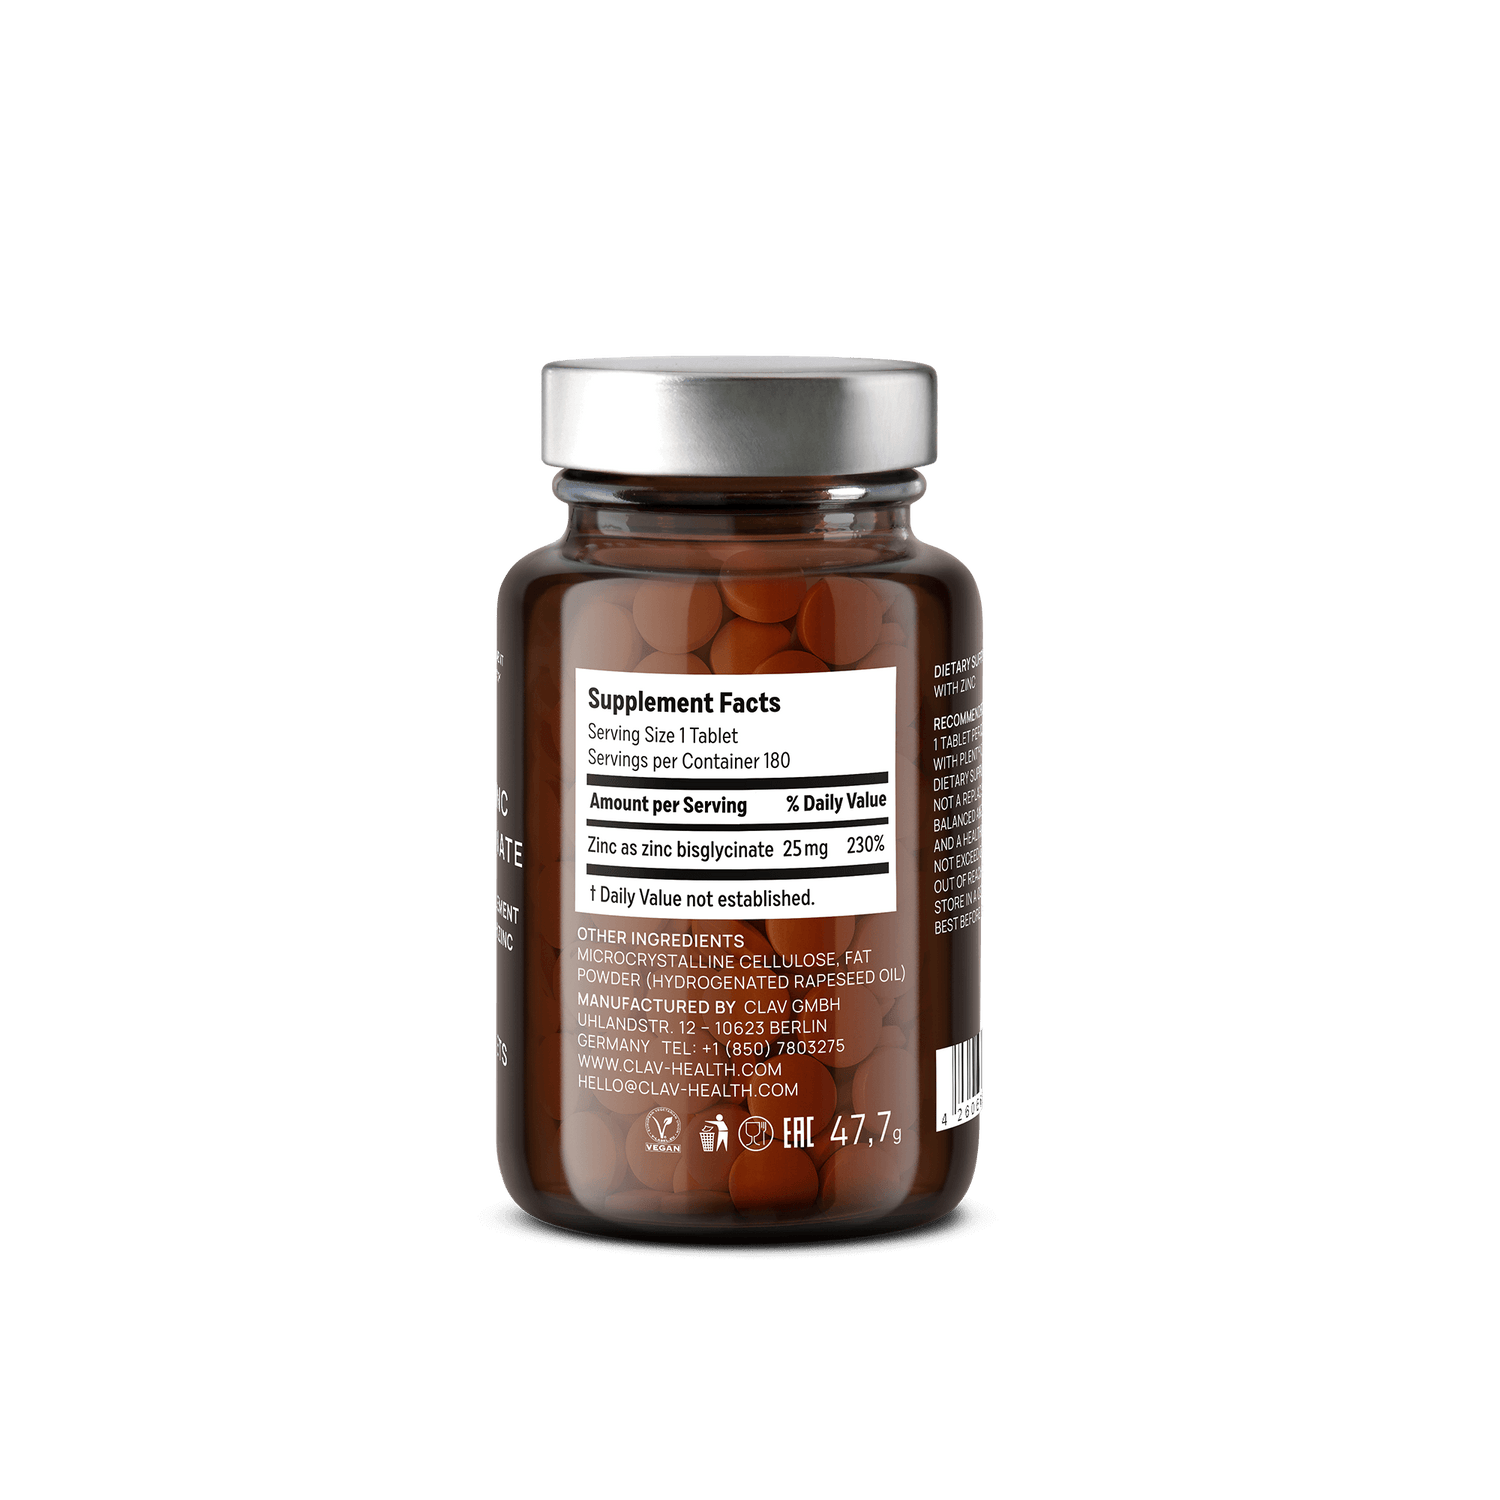 25mg-Zinc-Bisglycinate-Tablets Ingredients